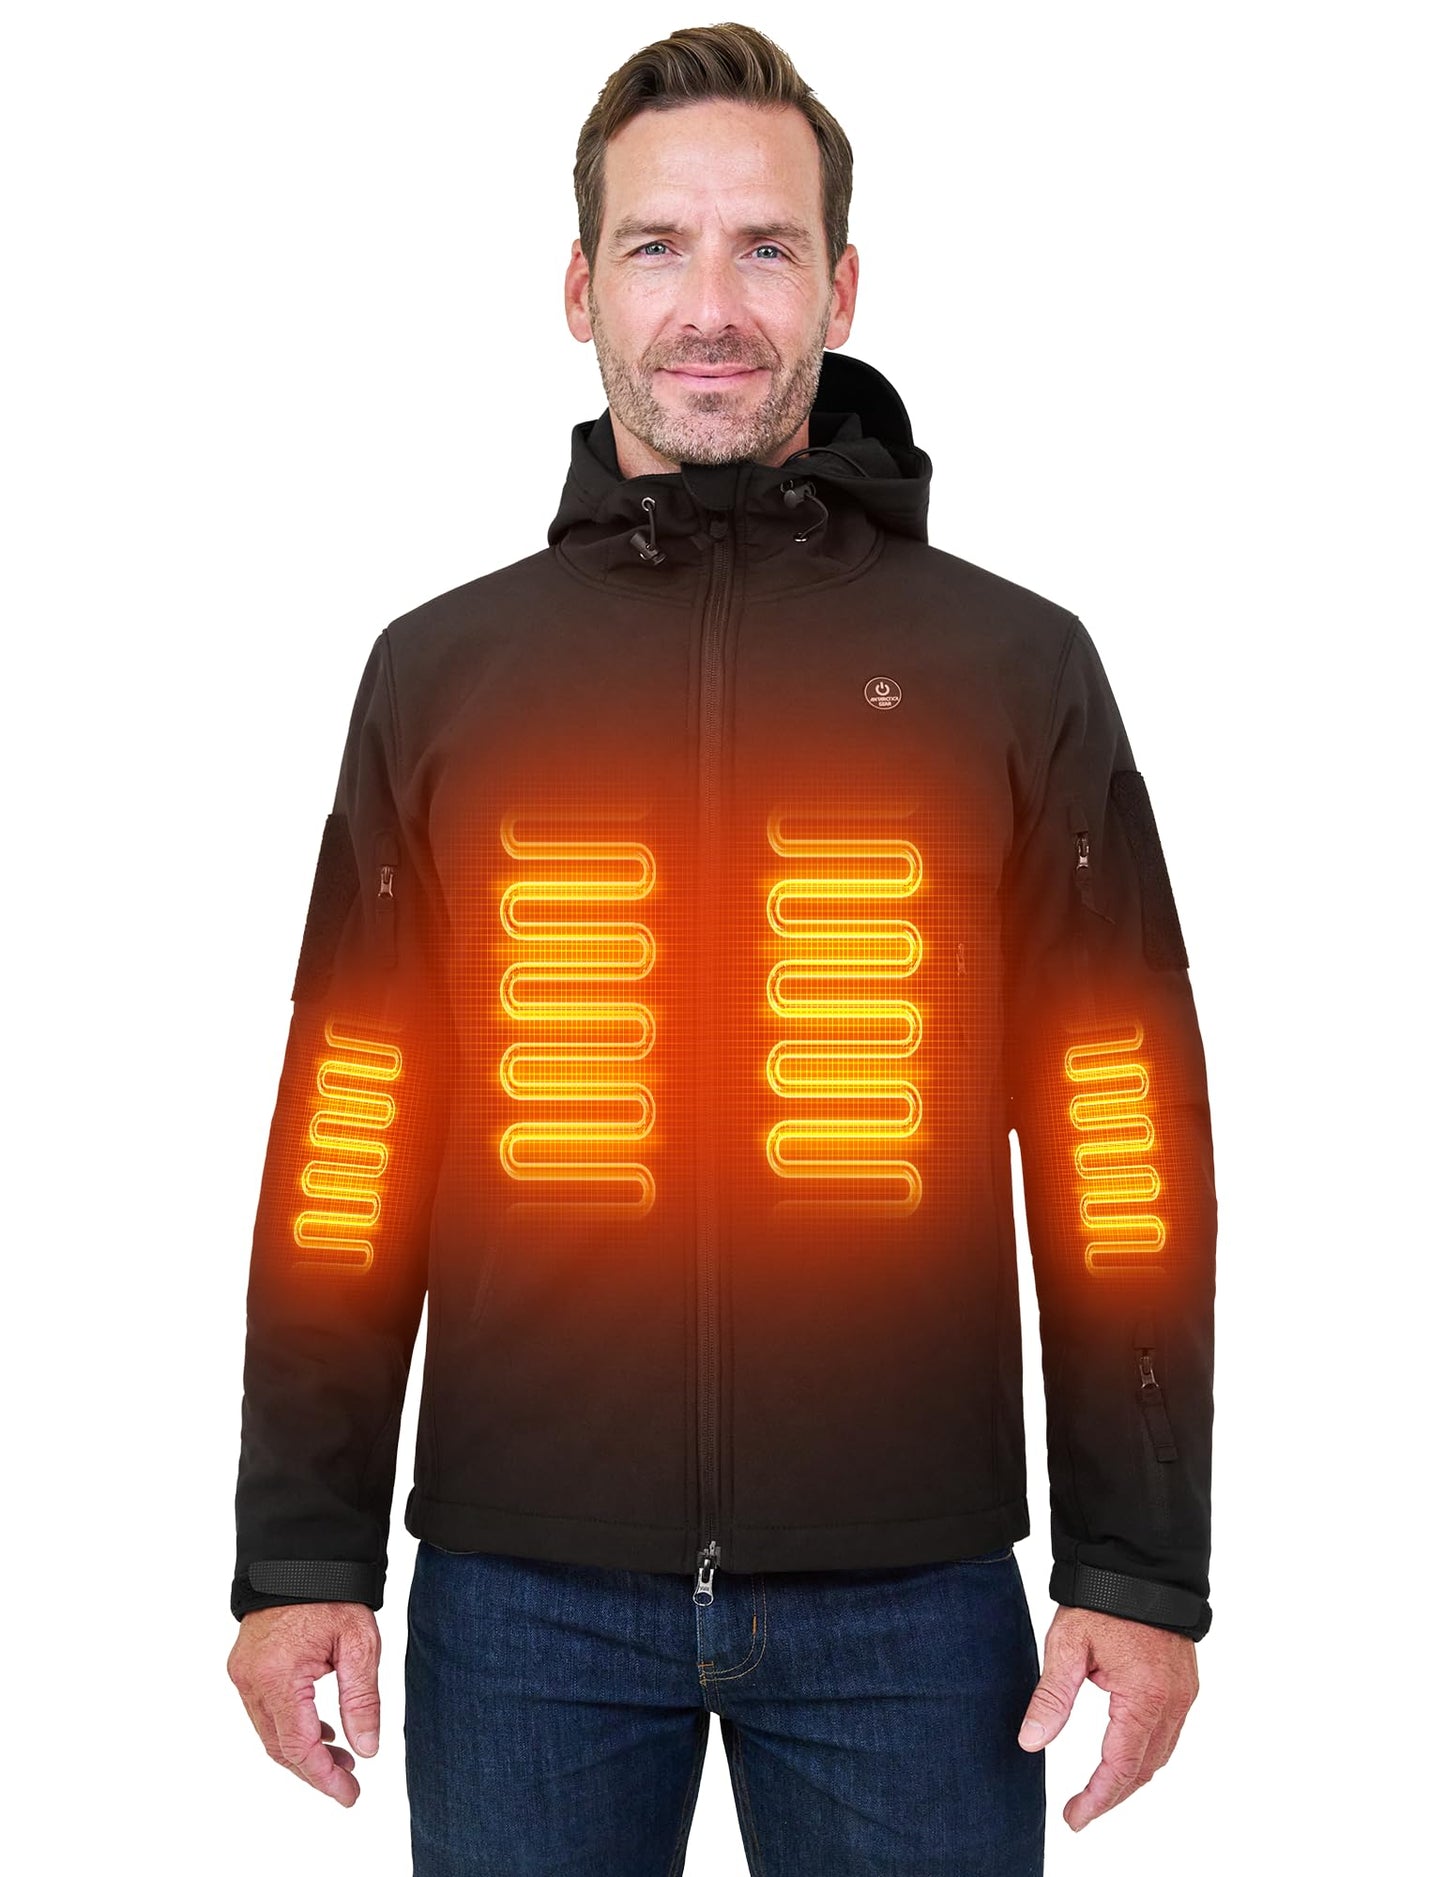 SV Antartic Softshell Heated Jacket